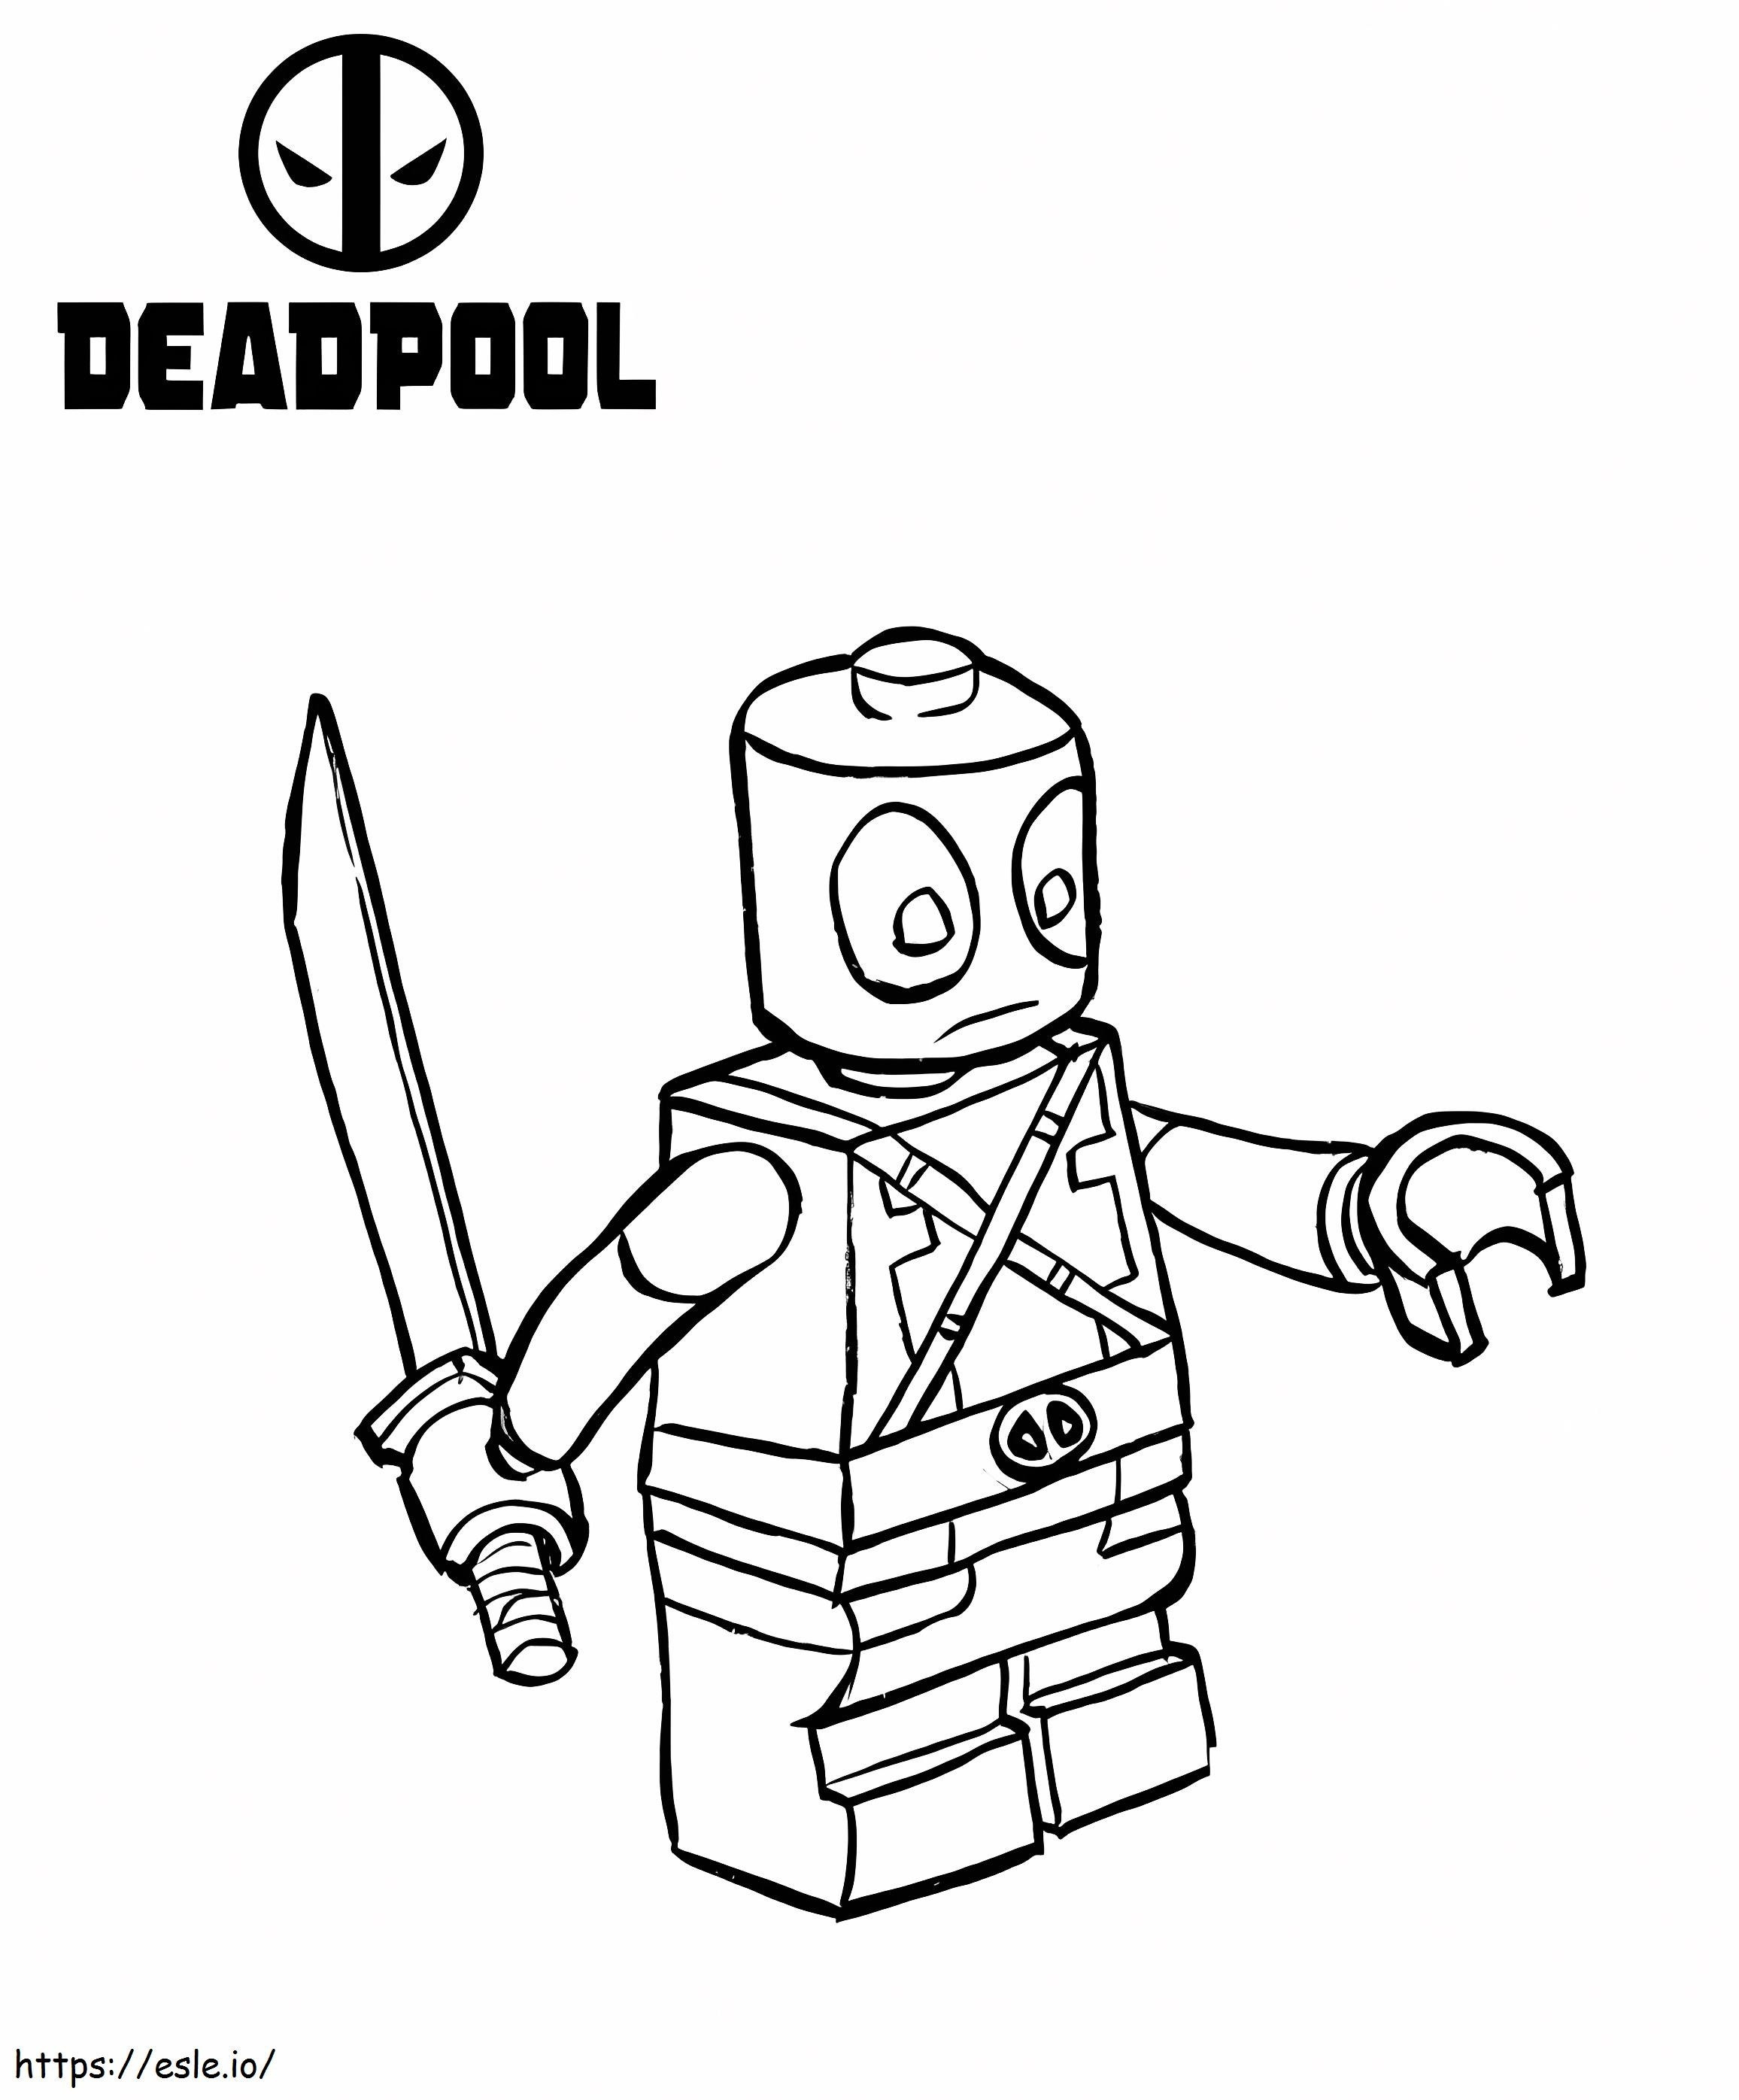 Divertido Lego Deadpool para colorear